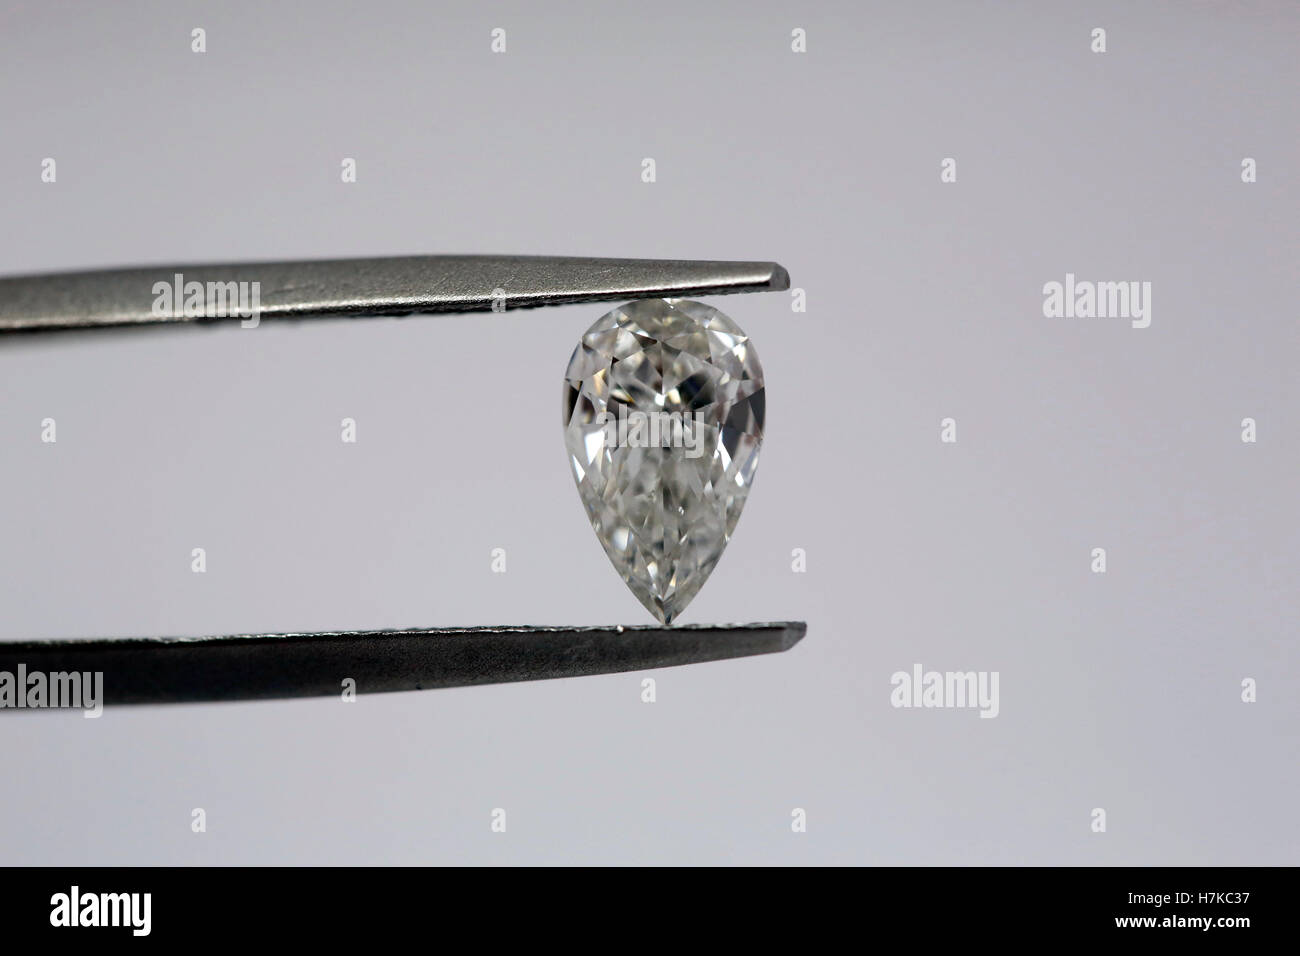 Diamant en forme de poire Banque D'Images